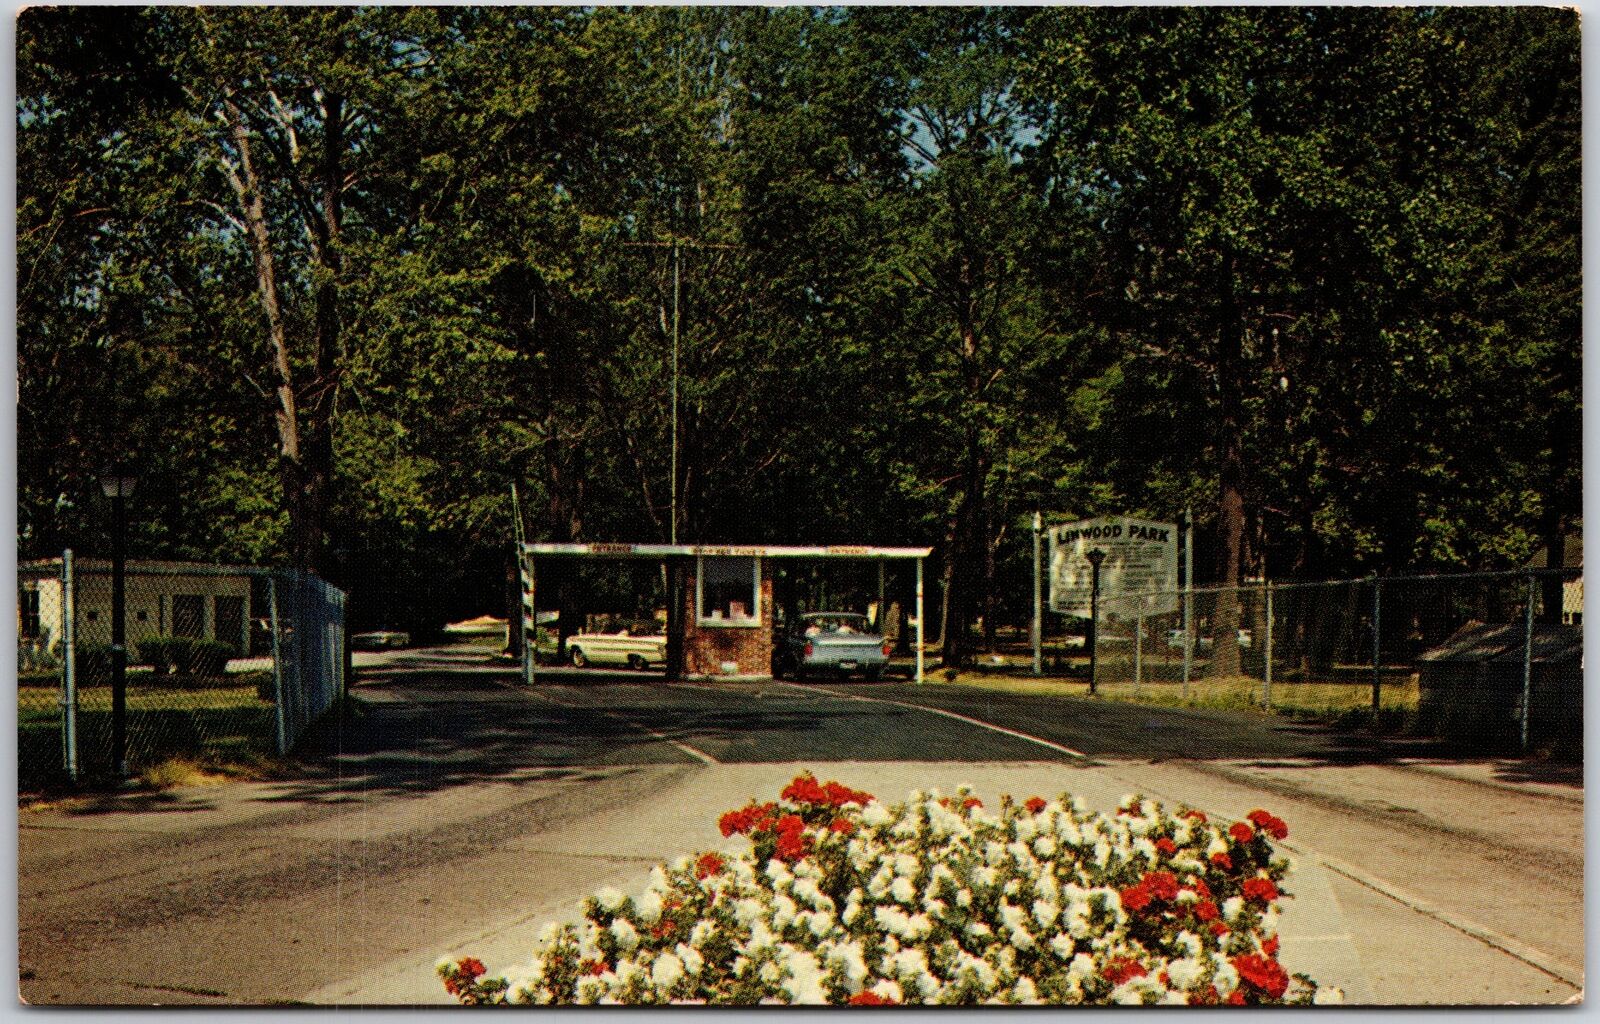 Vermilion Ohio, 1965 Main Entrance to Linwood Park, Driveway, Vintage Postcard